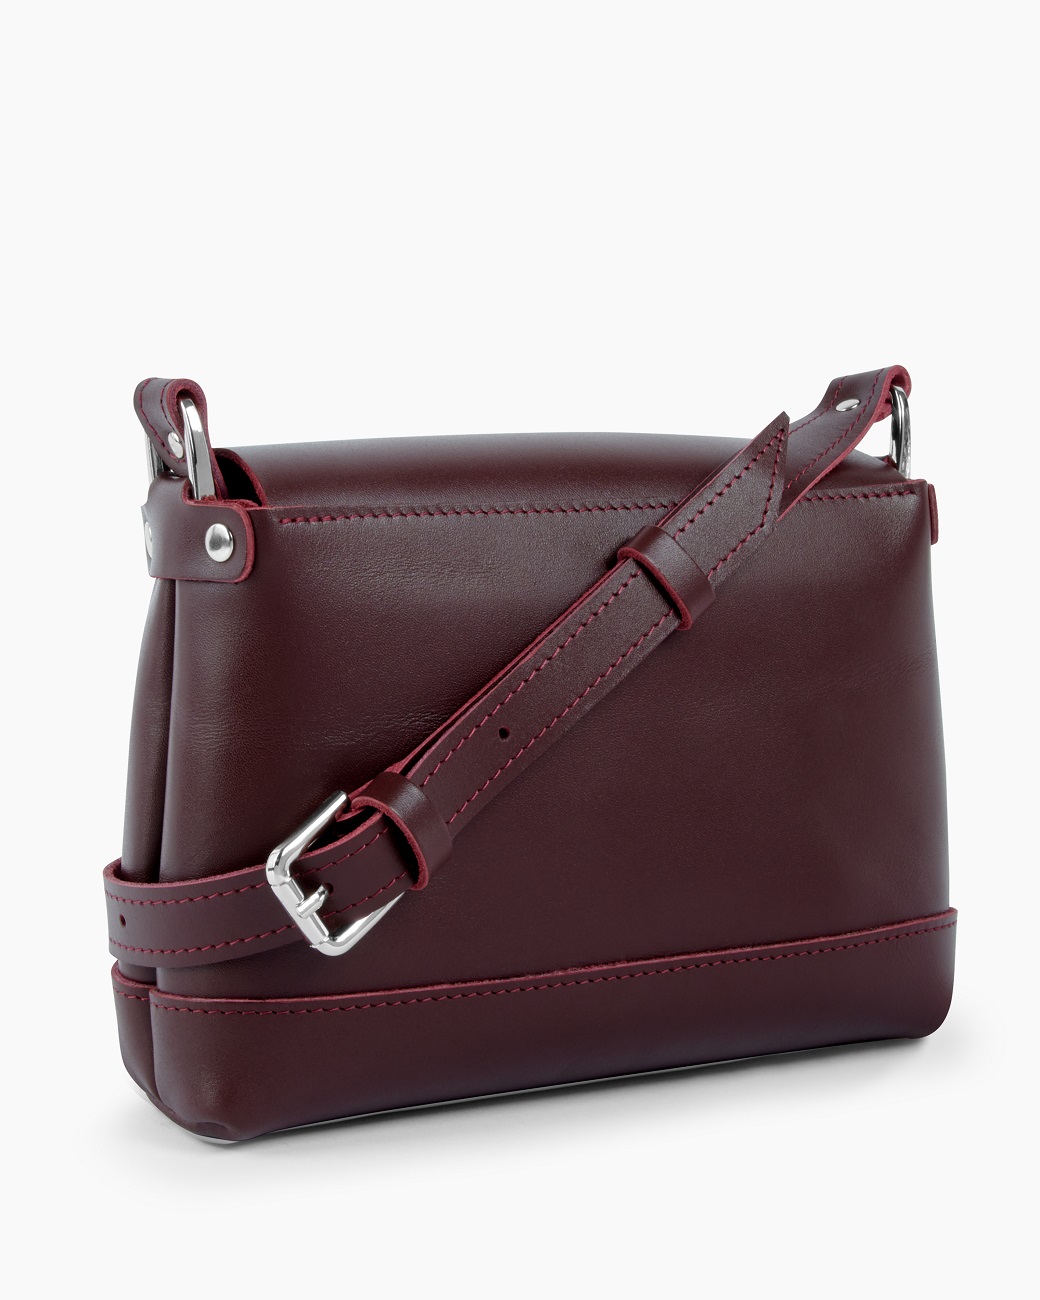 Женская сумка через плечо из натуральной кожи бордовая A003 burgundy